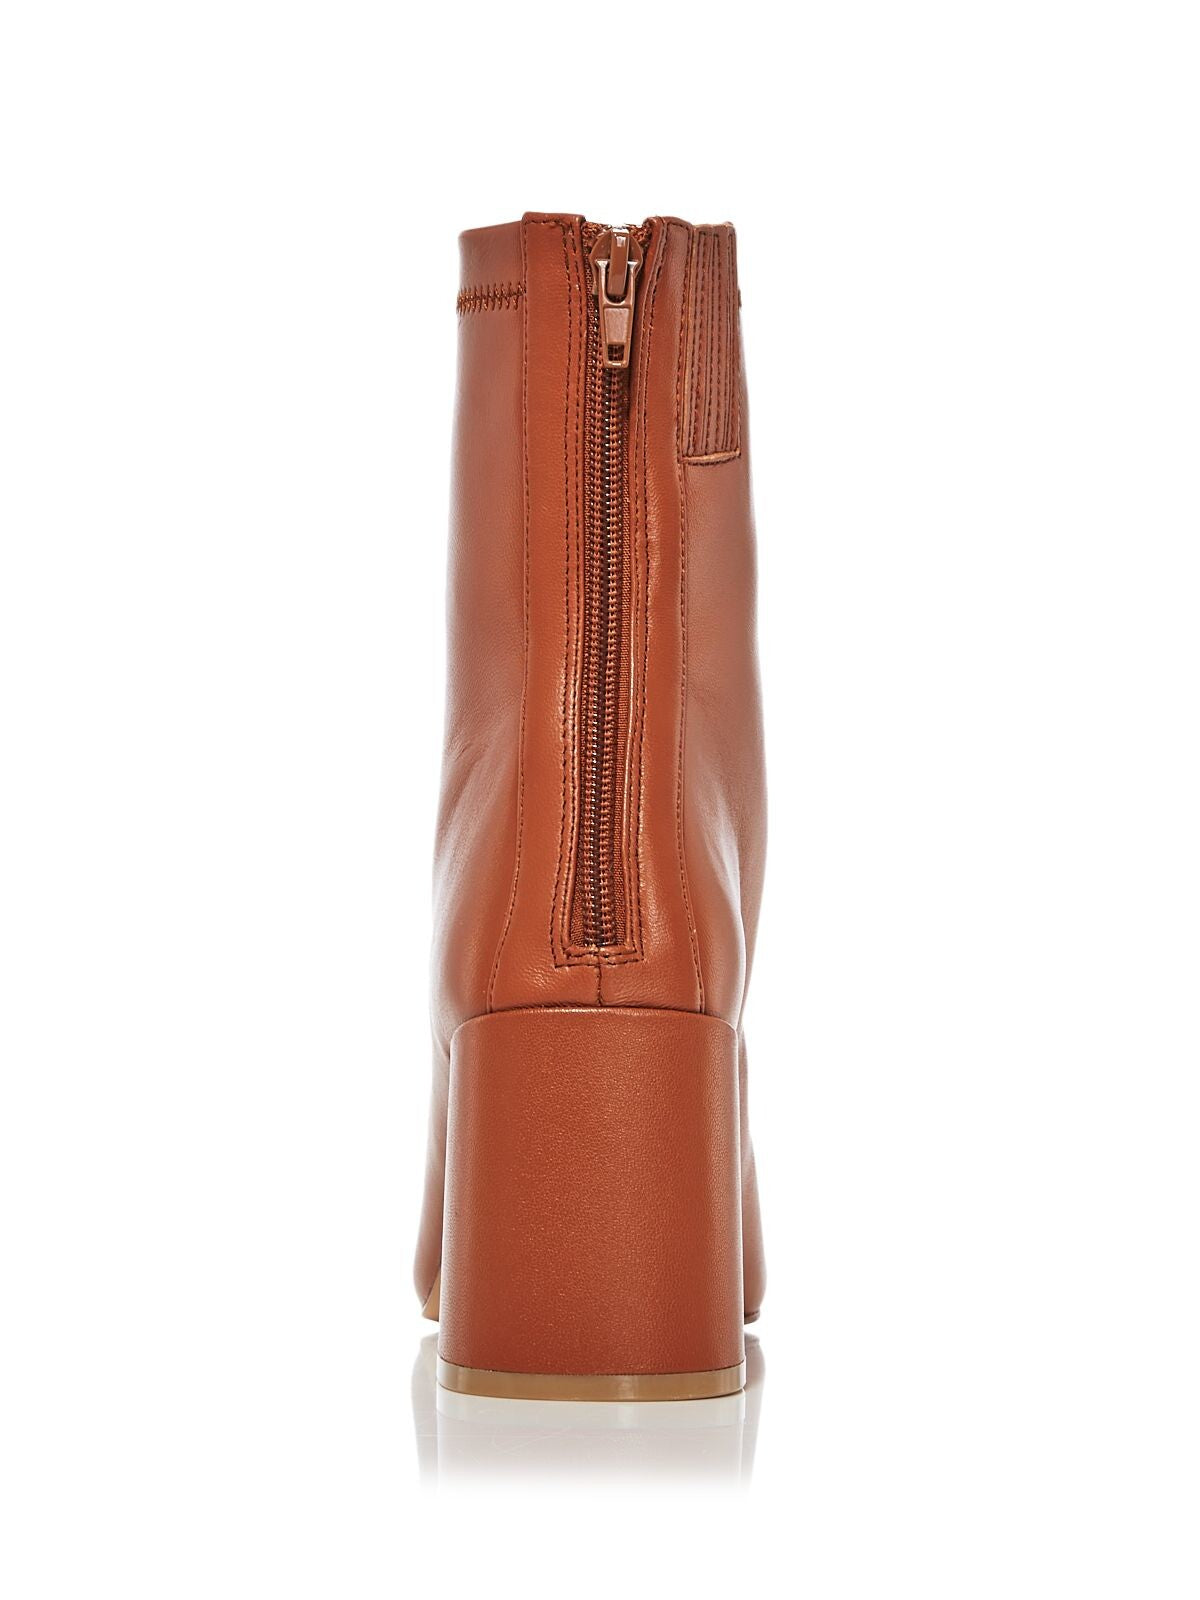 AQUA Womens Brown Comfort Goring Juno Square Toe Block Heel Zip-Up Leather Booties 10 M